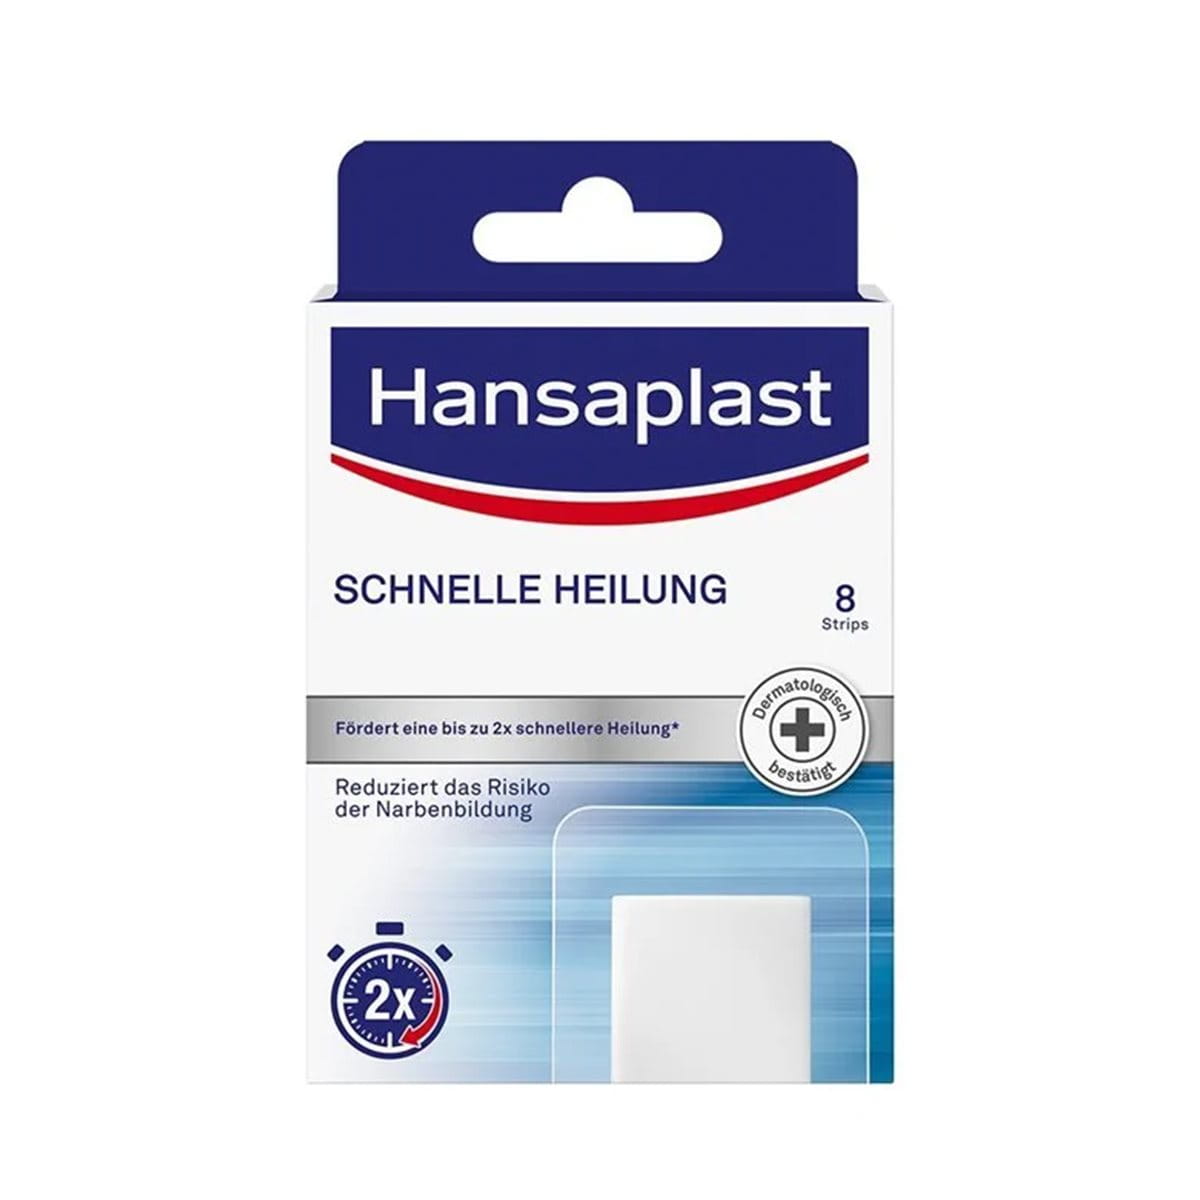 Hydrokolloid-Pflaster für schnelle Wundheilung - Hansaplast